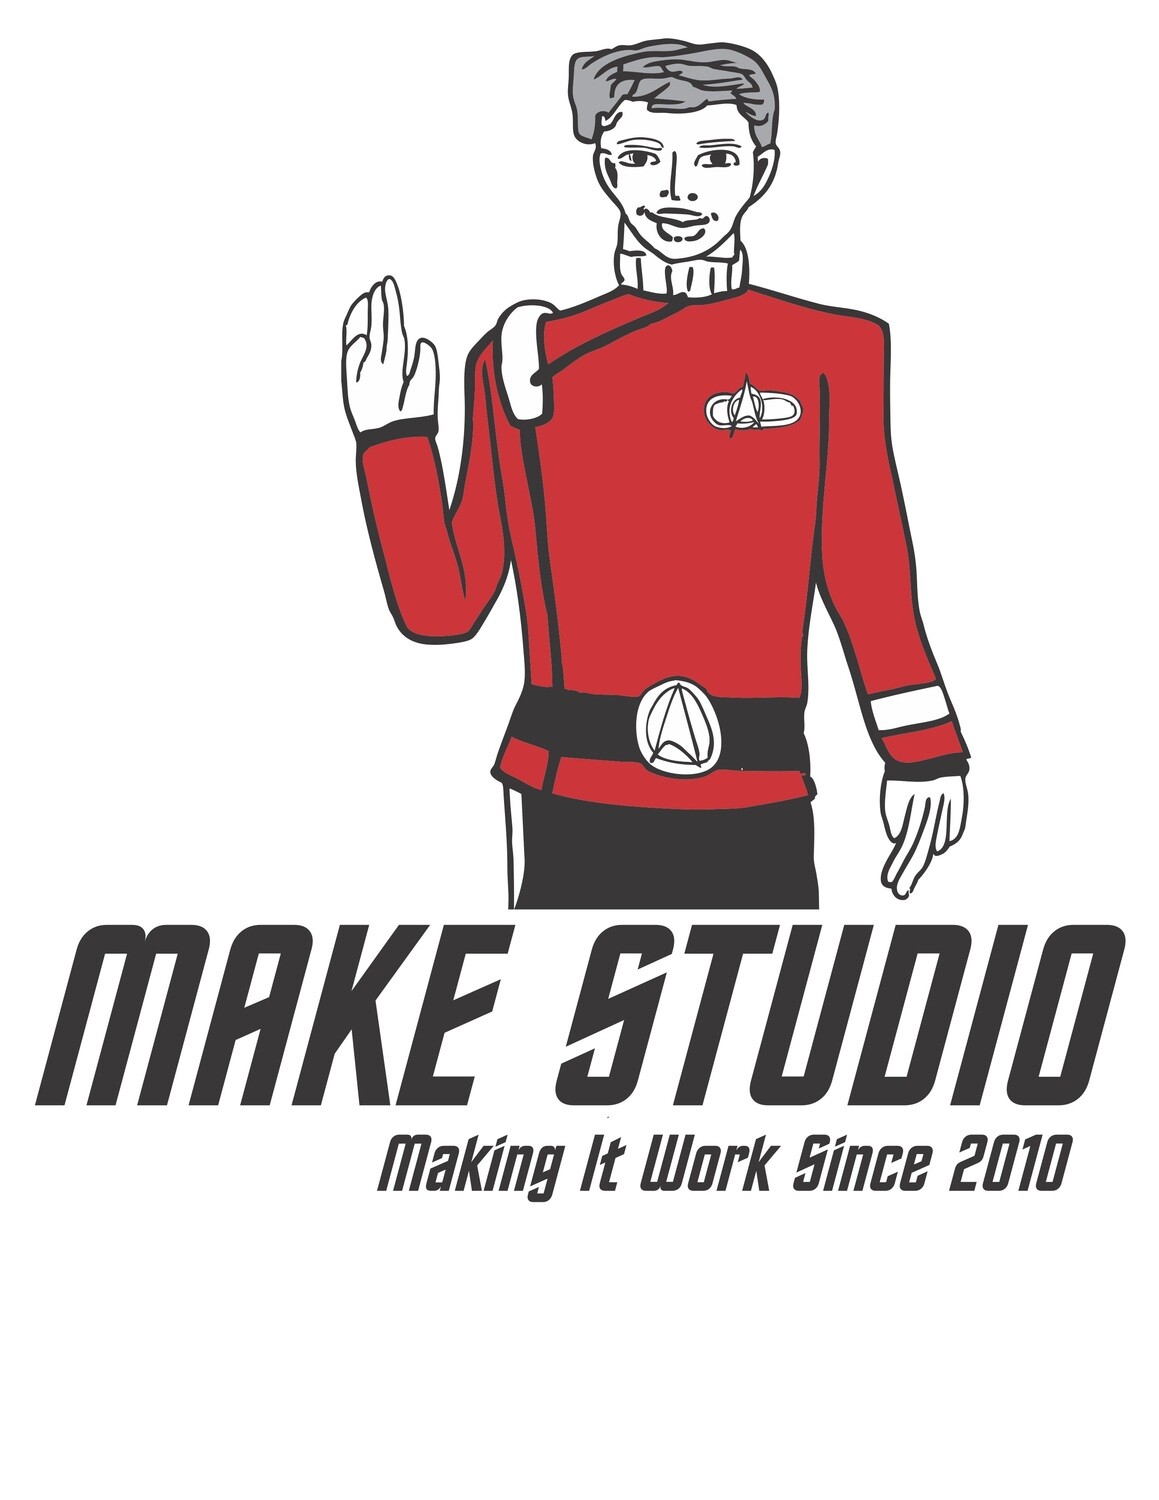 10th Anniversary "Make it so!" T-shirt